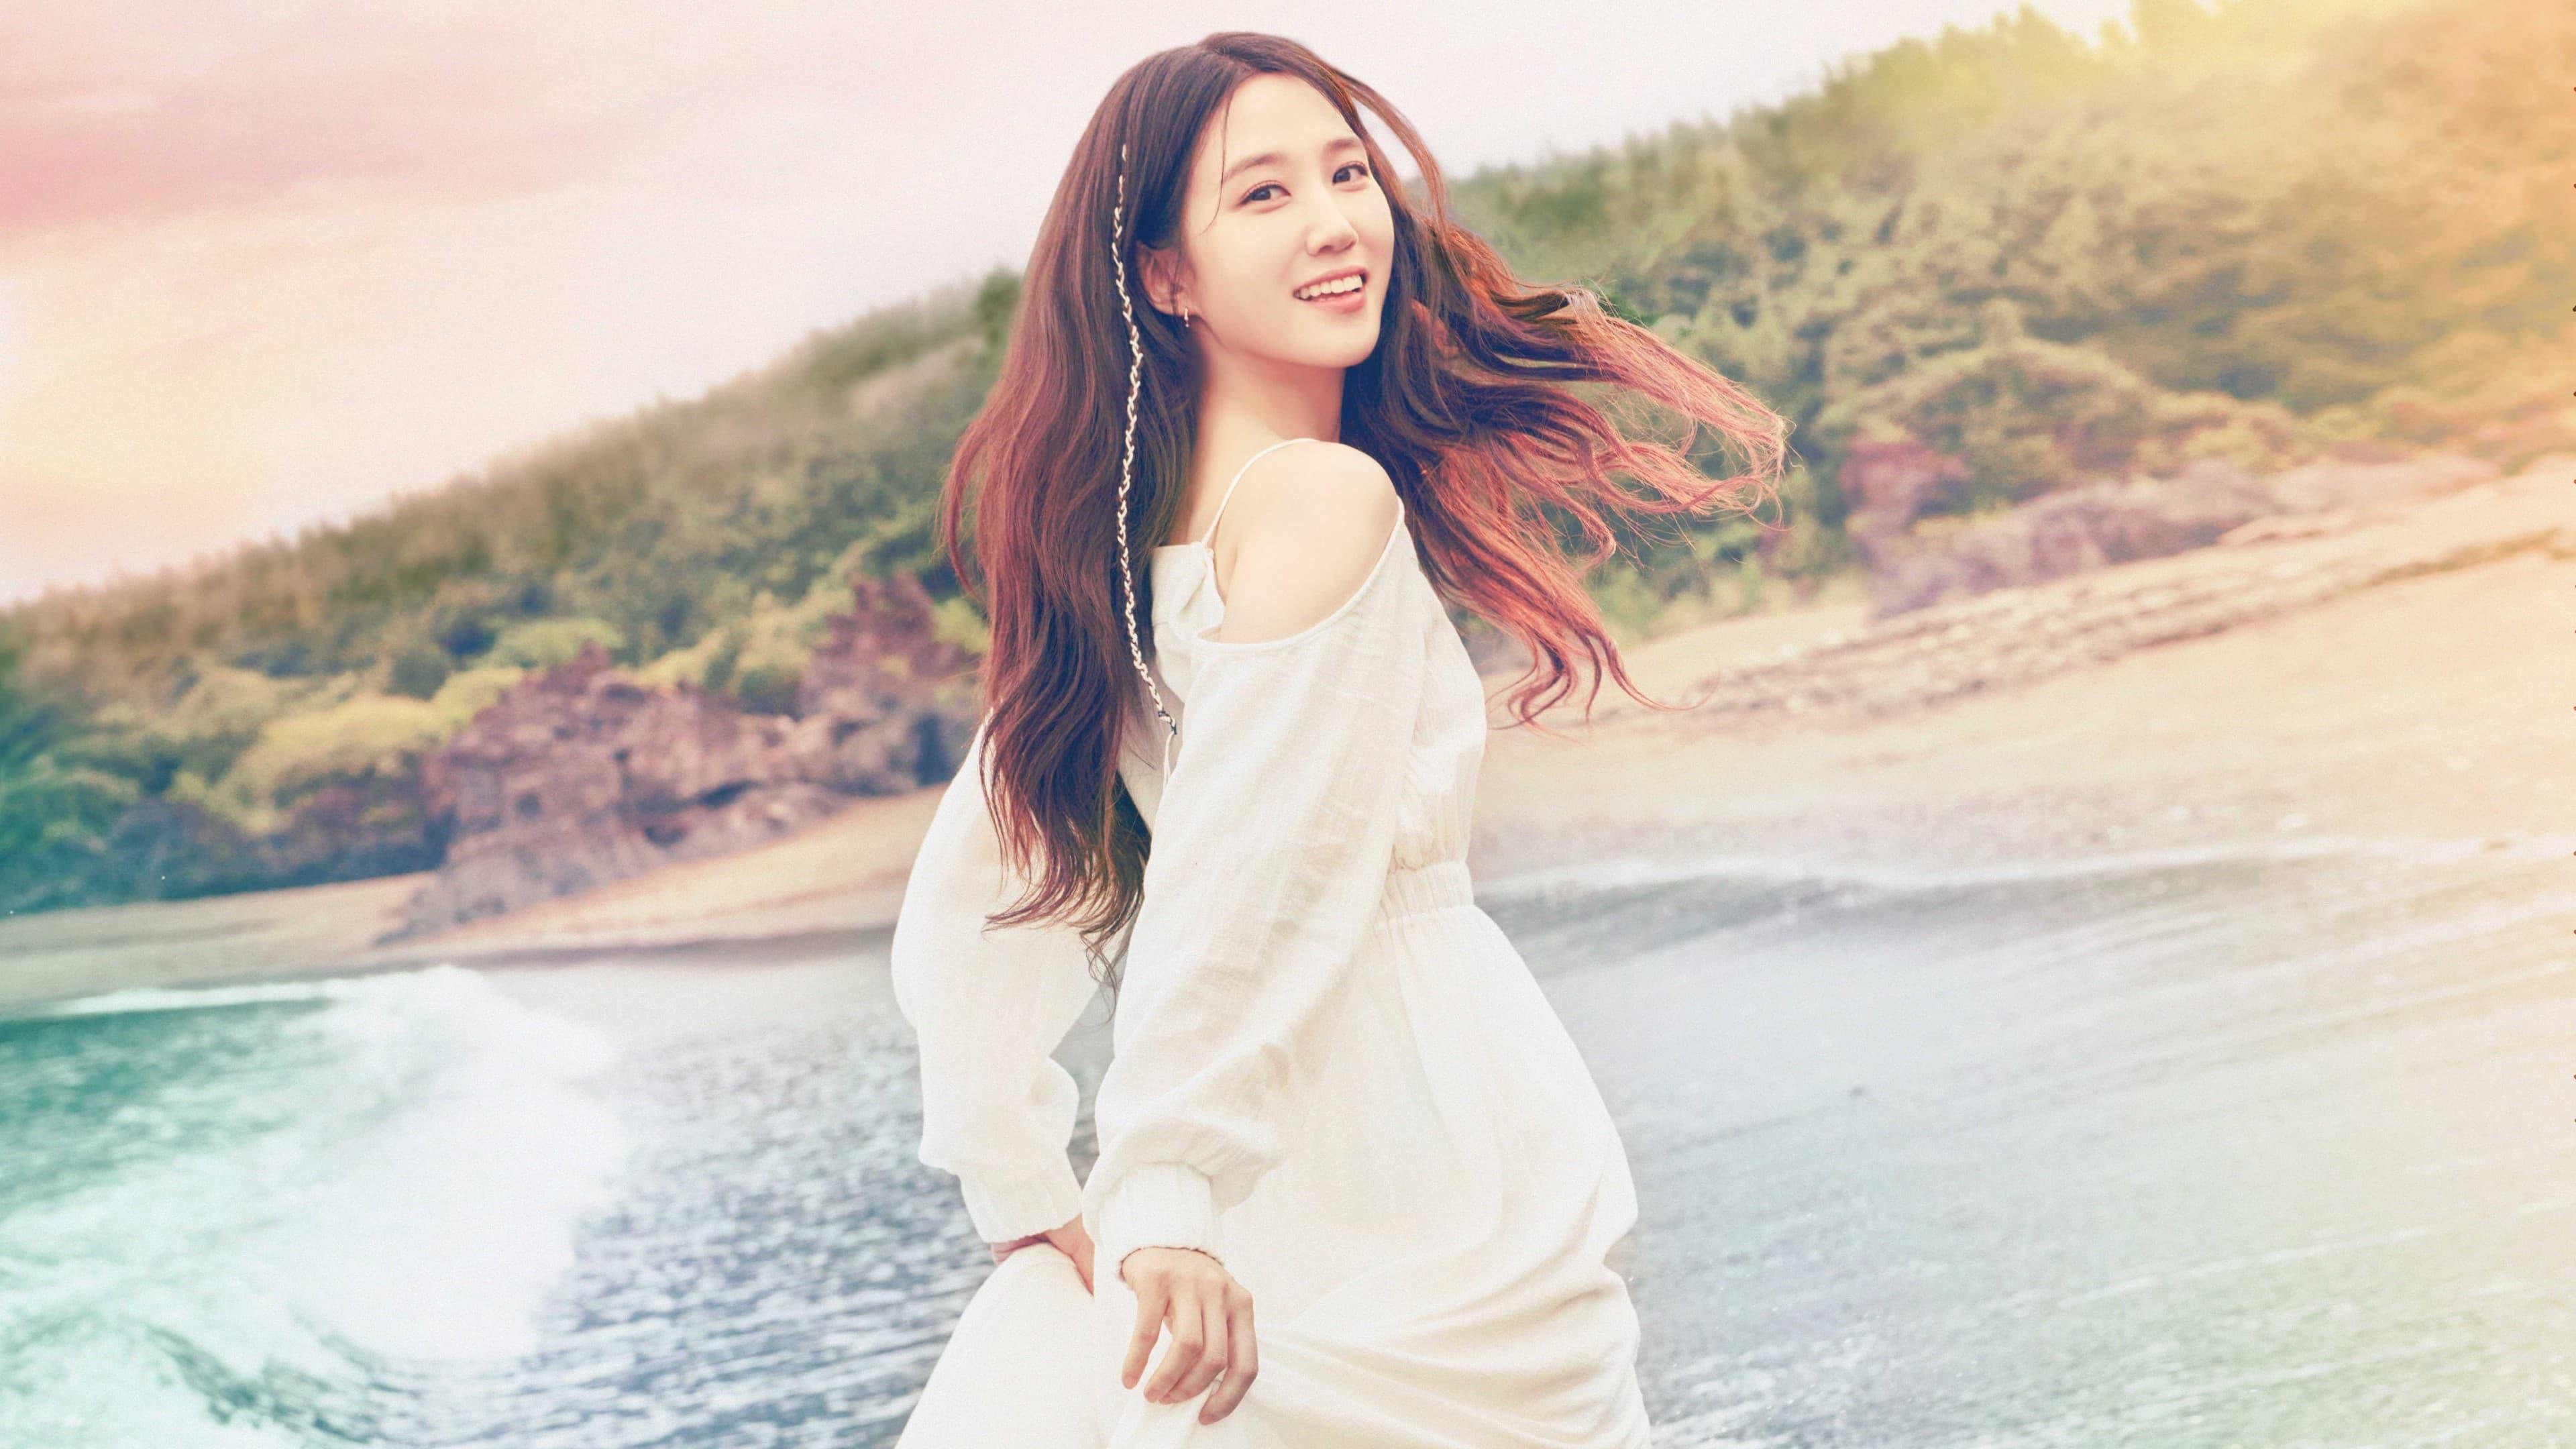 Oh Ji-hye backdrop